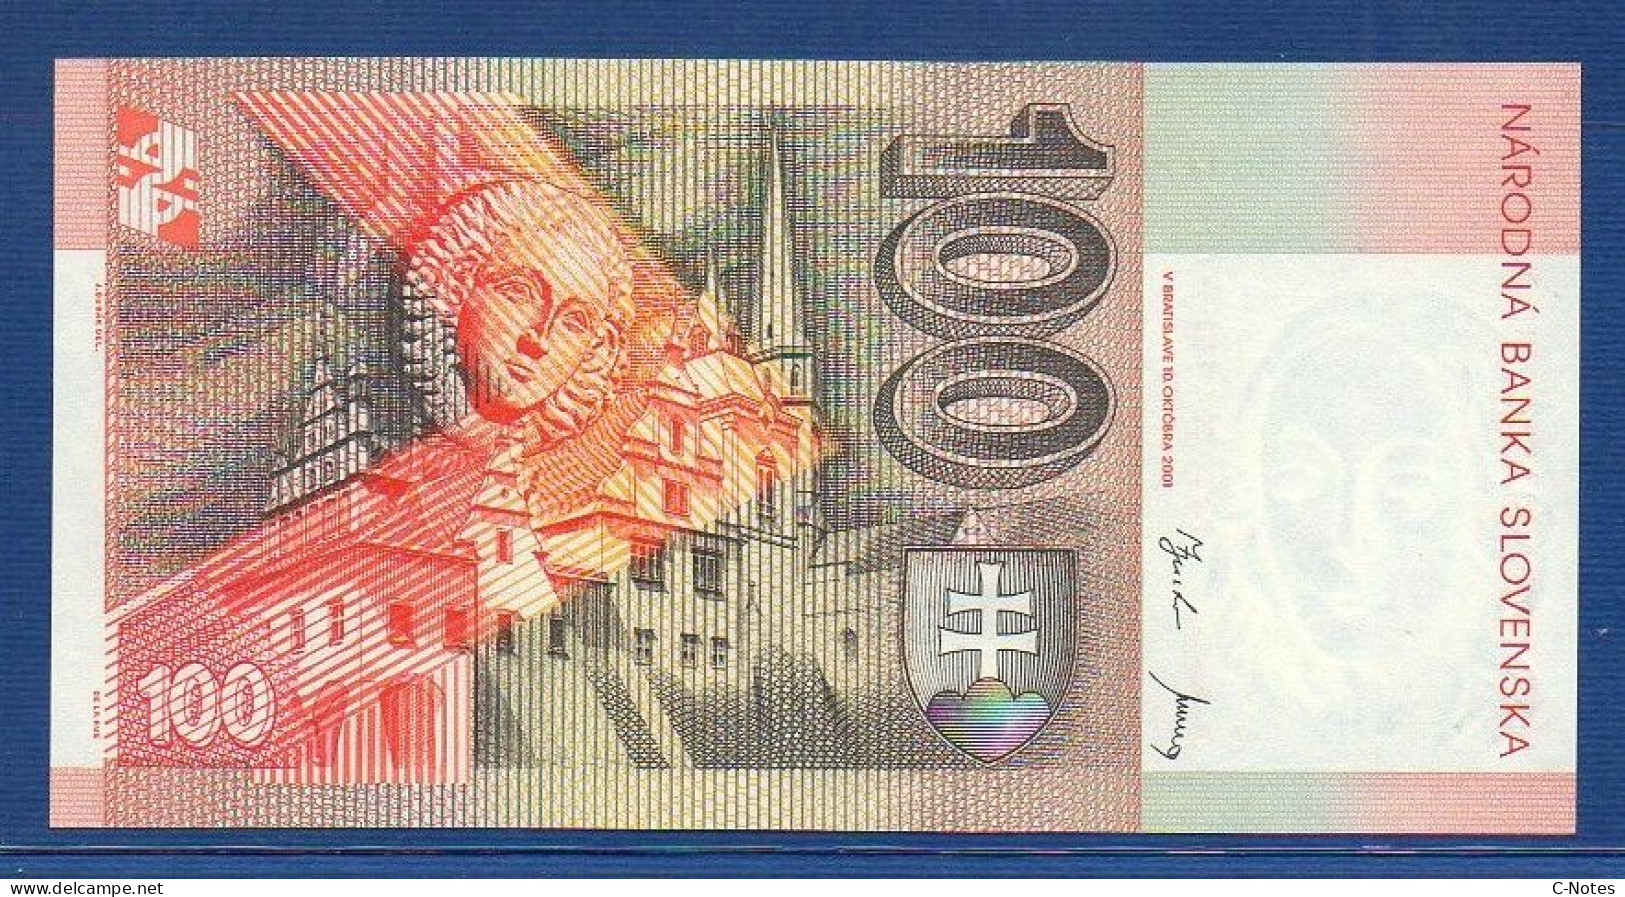 SLOVAKIA - P.25d – 100 Slovenských Korún 2001 UNC, S/n U15195882 - Slovacchia